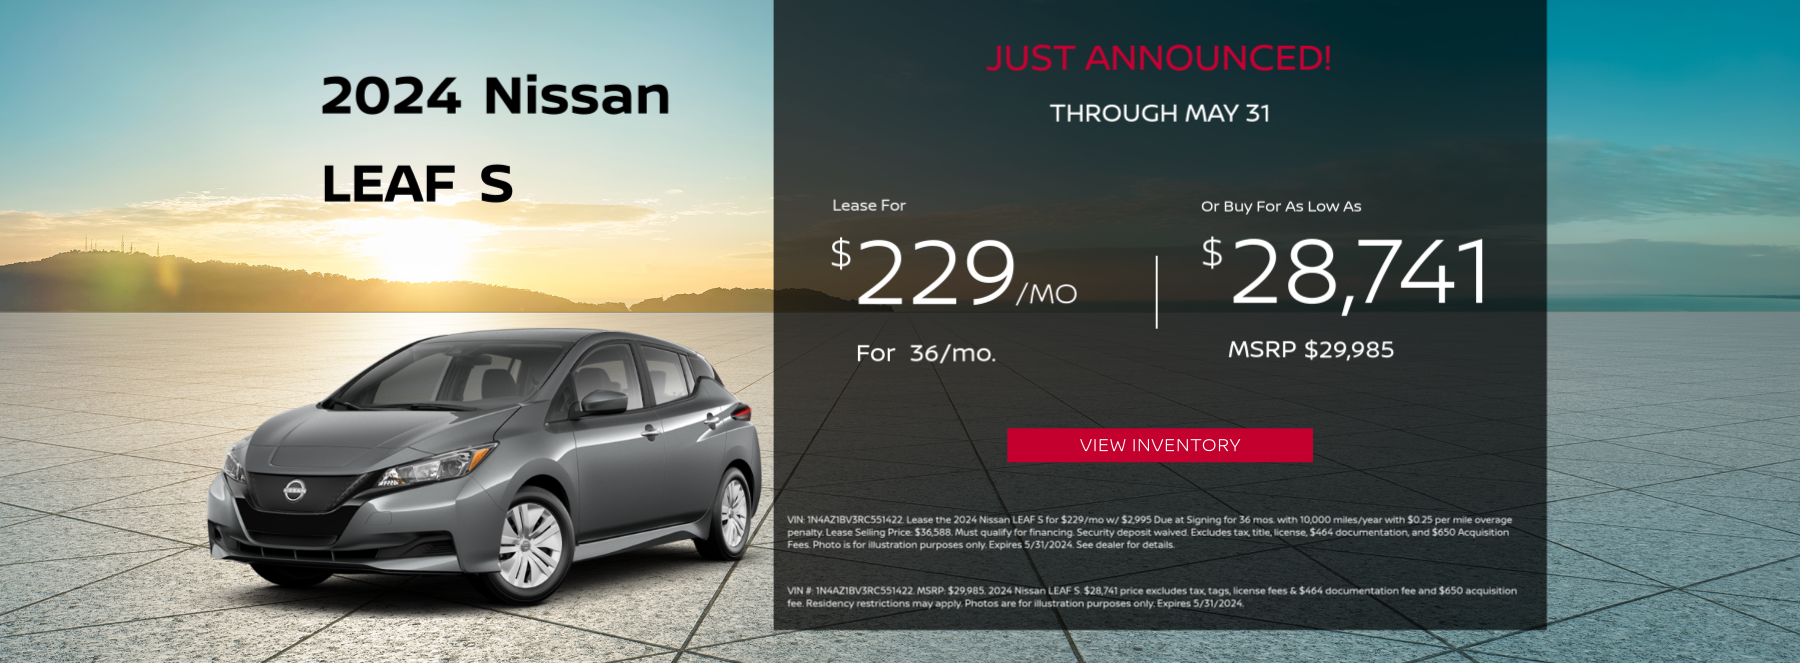 2024 Nissan Leaf Offer